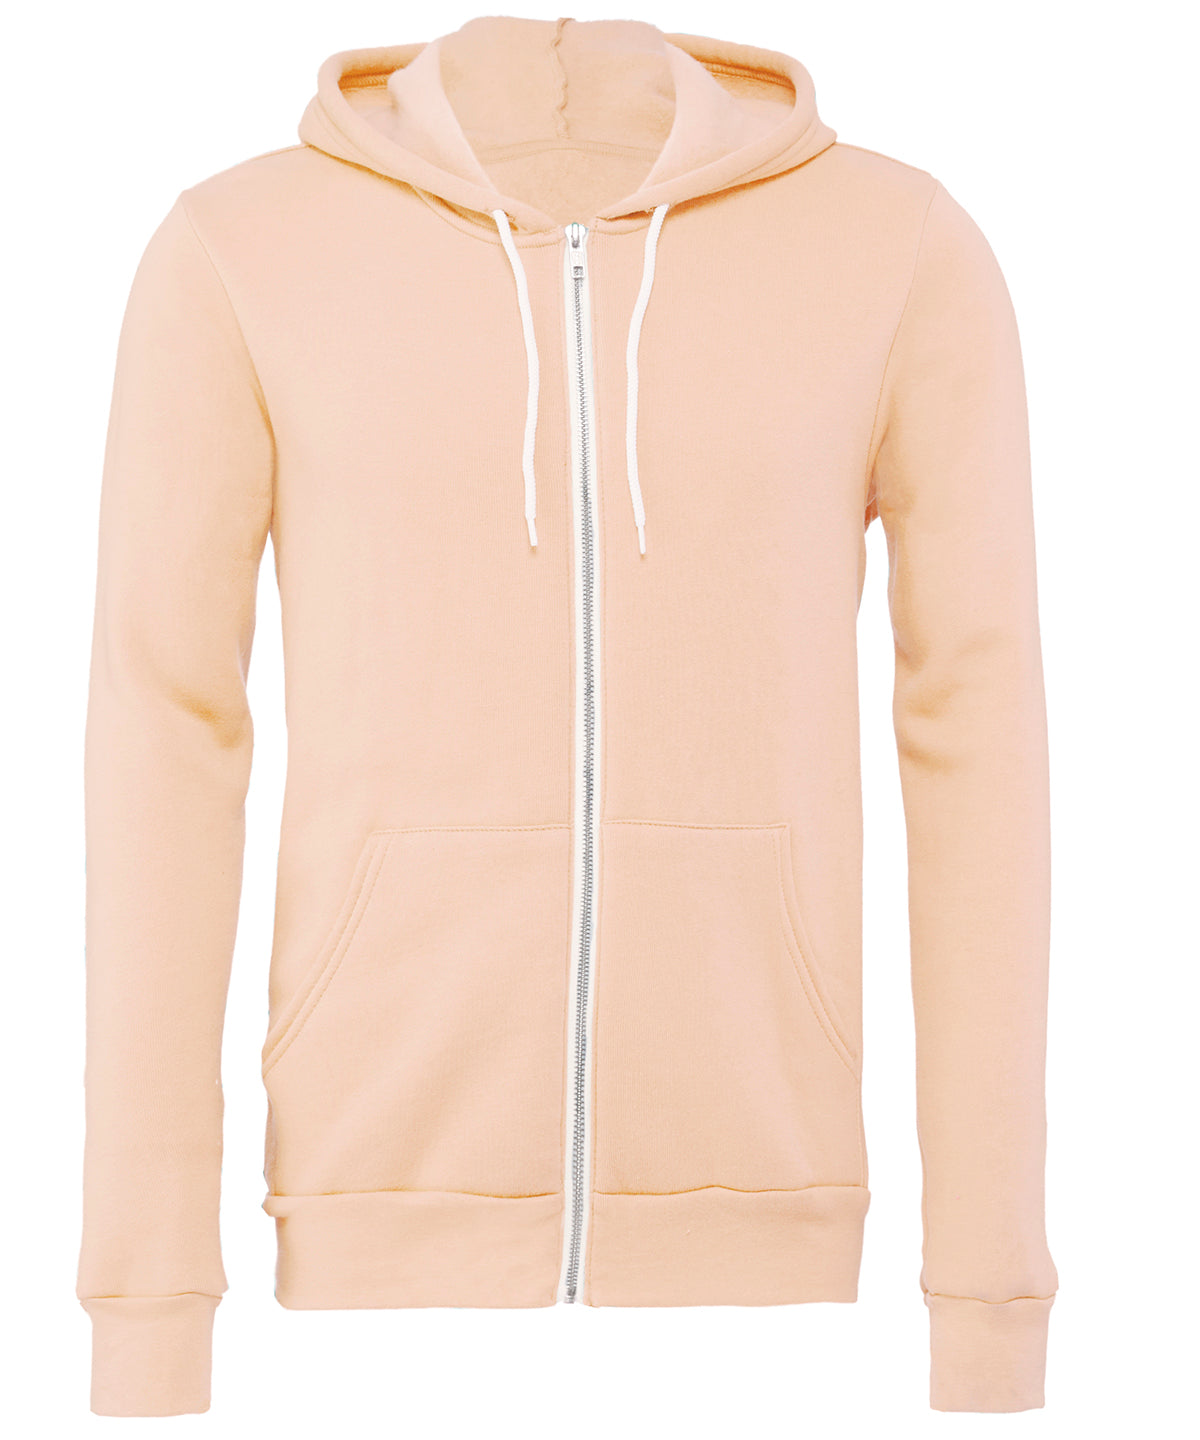 Personalised Hoodies - Dark Grey Bella Canvas Unisex polycotton fleece full-zip hoodie